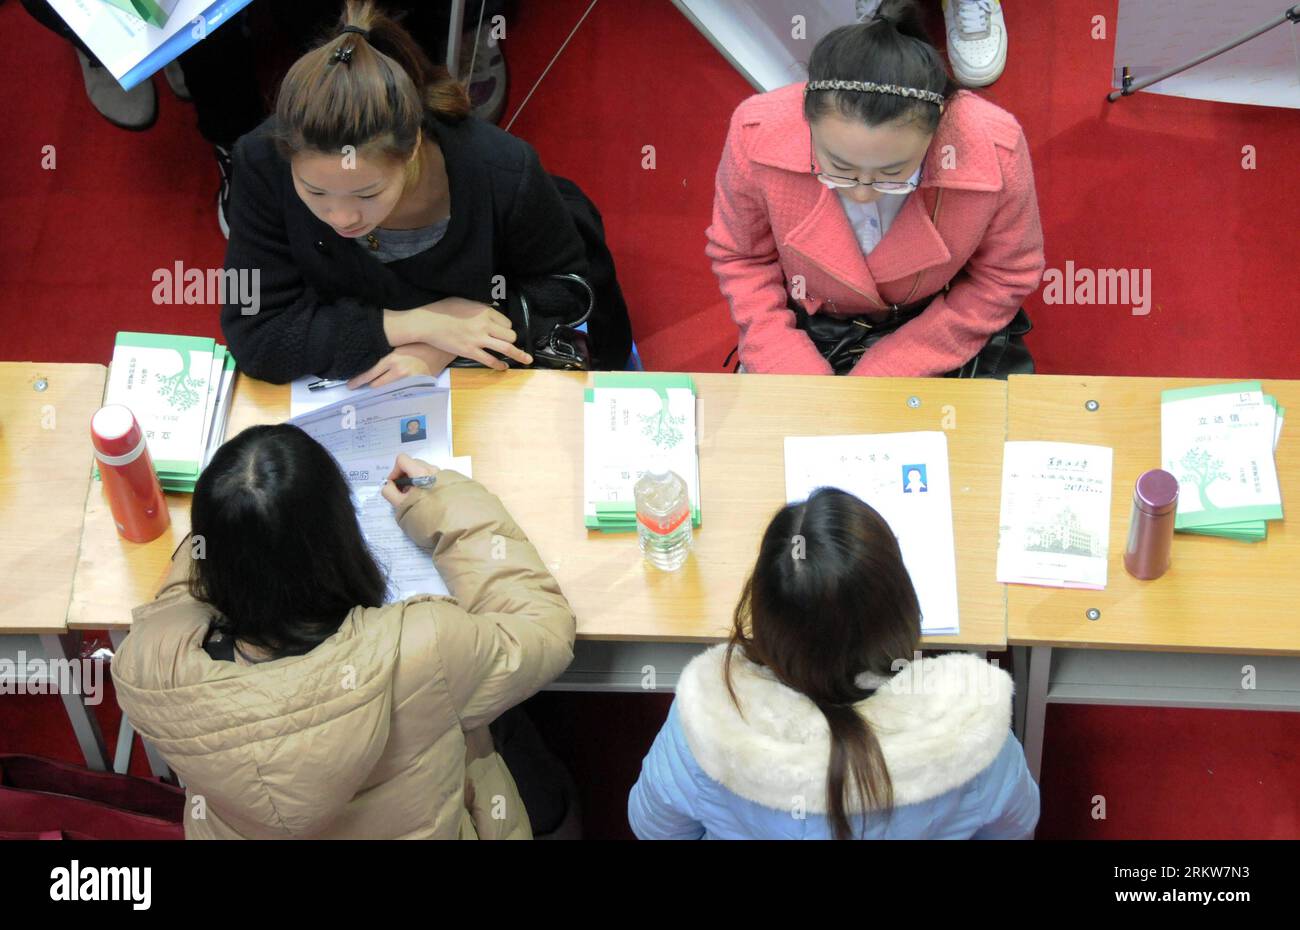 Bildnummer: 58630773 Datum: 25.10.2012 Copyright: Imago/Xinhua (121025) -- HARBIN, 25 de octubre de 2012 (Xinhua) -- Los graduados universitarios son entrevistados durante una feria de trabajo en el gimnasio de la Universidad de Ciencia y Tecnología de Harbin en Harbin, capital de la provincia de Heilongjiang, al noreste de China, el 25 de octubre de 2012. Alrededor de 190 empresas proporcionaron más de 1.000 vacanicias en la feria de empleo el jueves. (Xinhua/Wang Kai) (hy) CHINA-HEILONGJIANG-HARBIN-COLLEGE GRADUATE-JOB FAIR (CN) PUBLICATIONxNOTxINxCHN Gesellschaft Wirtschaft Messe Ausbildung Arbeit Jobmesse Arbeitsplätze Beruf x0x xdd 2012 quer 58630773 D Foto de stock